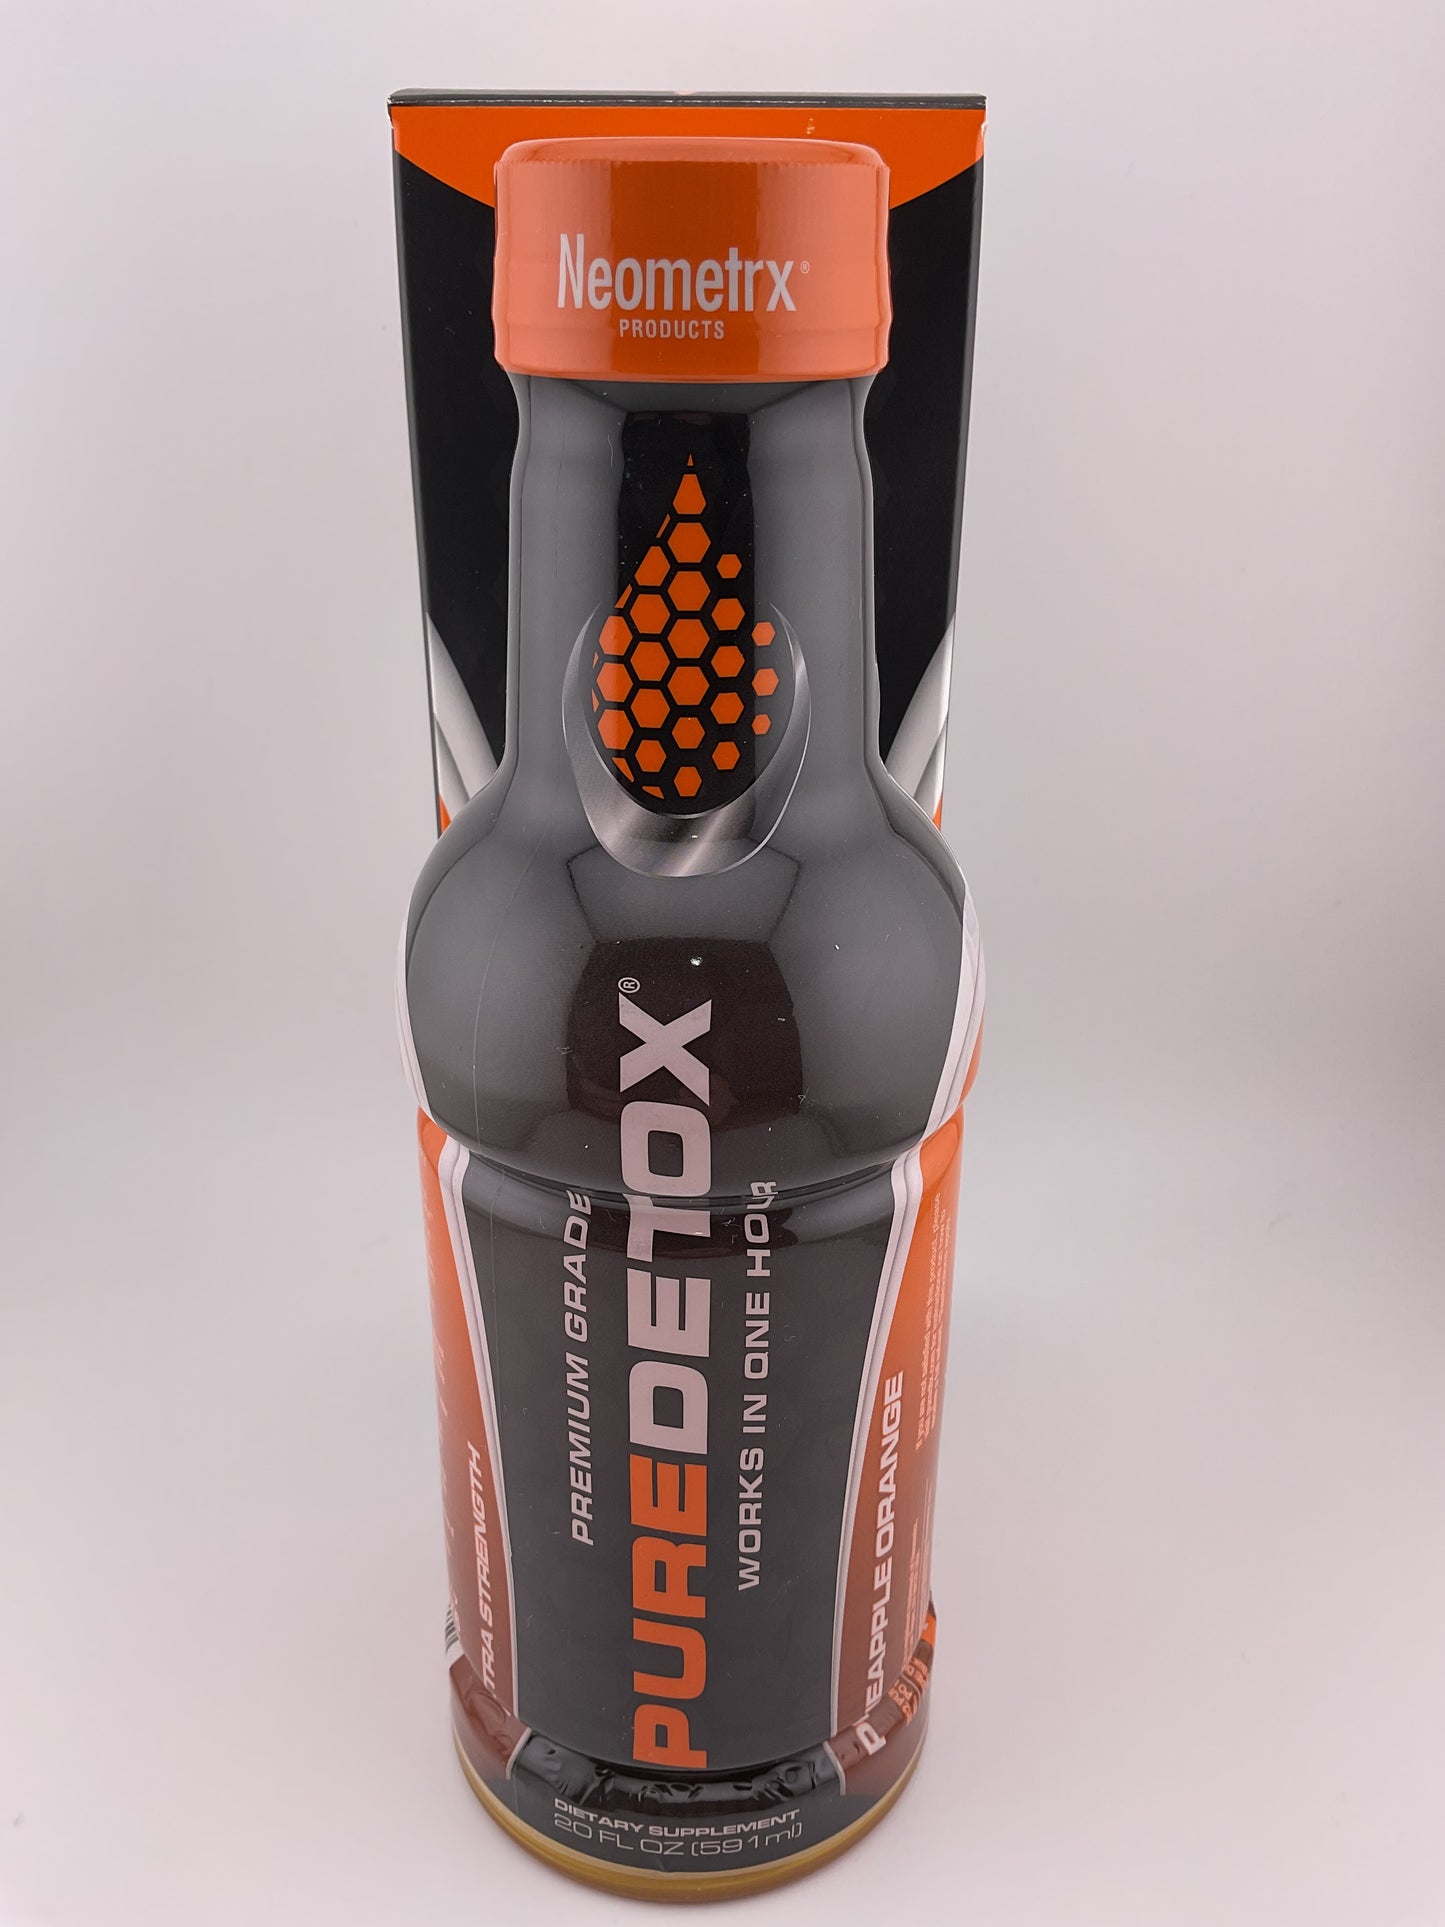 Neometrx Pure Detox Premium Grade Extra Strength